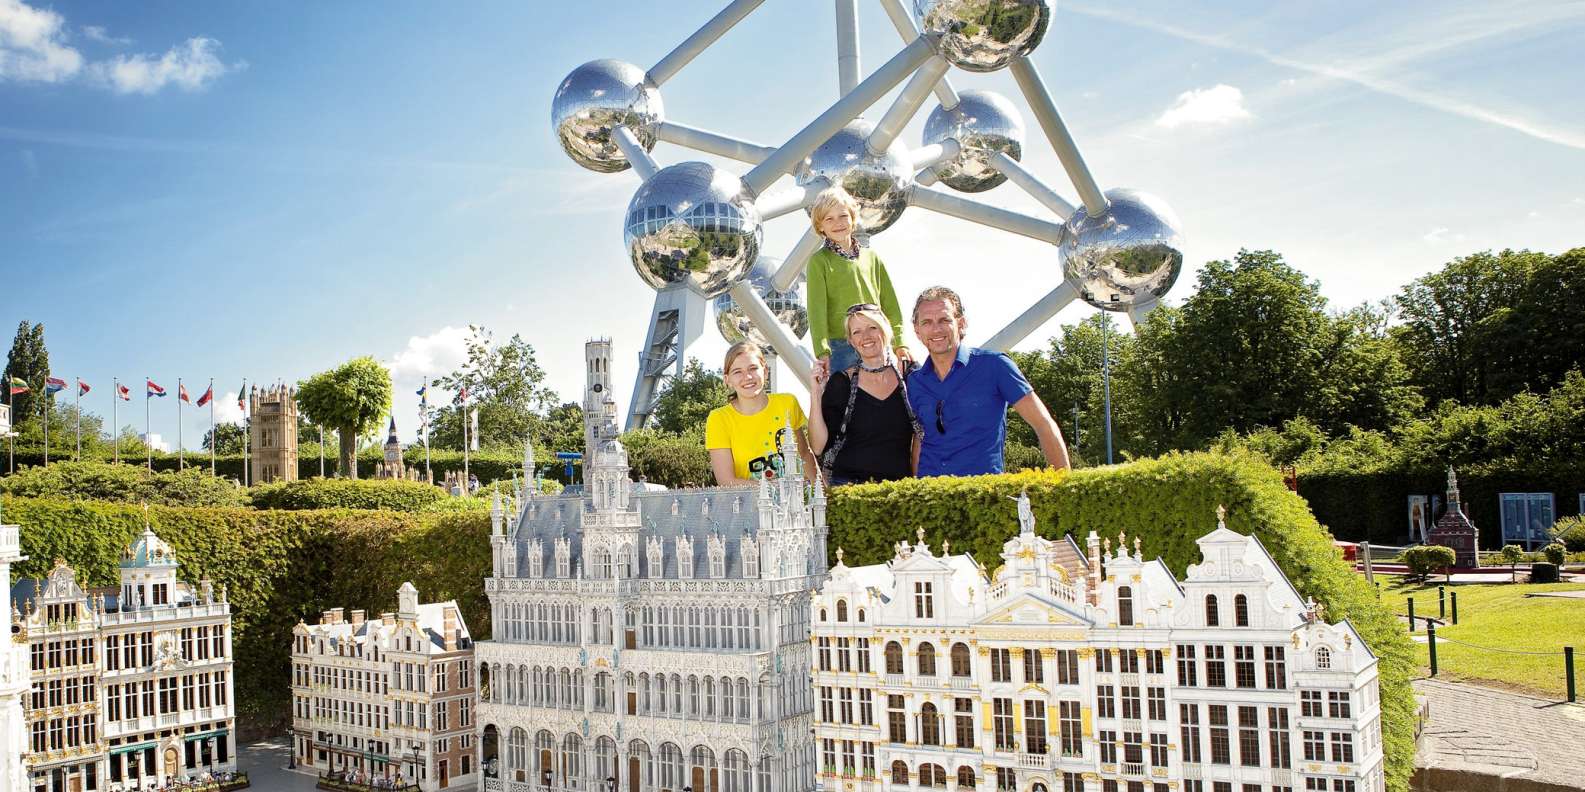 Mini eu. Парк «Европа в миниатюре» Бельгия, Брюссель. Мини-Европа. Вывеска мини-Европа. Мини Европа в Брюсселе Art Map.